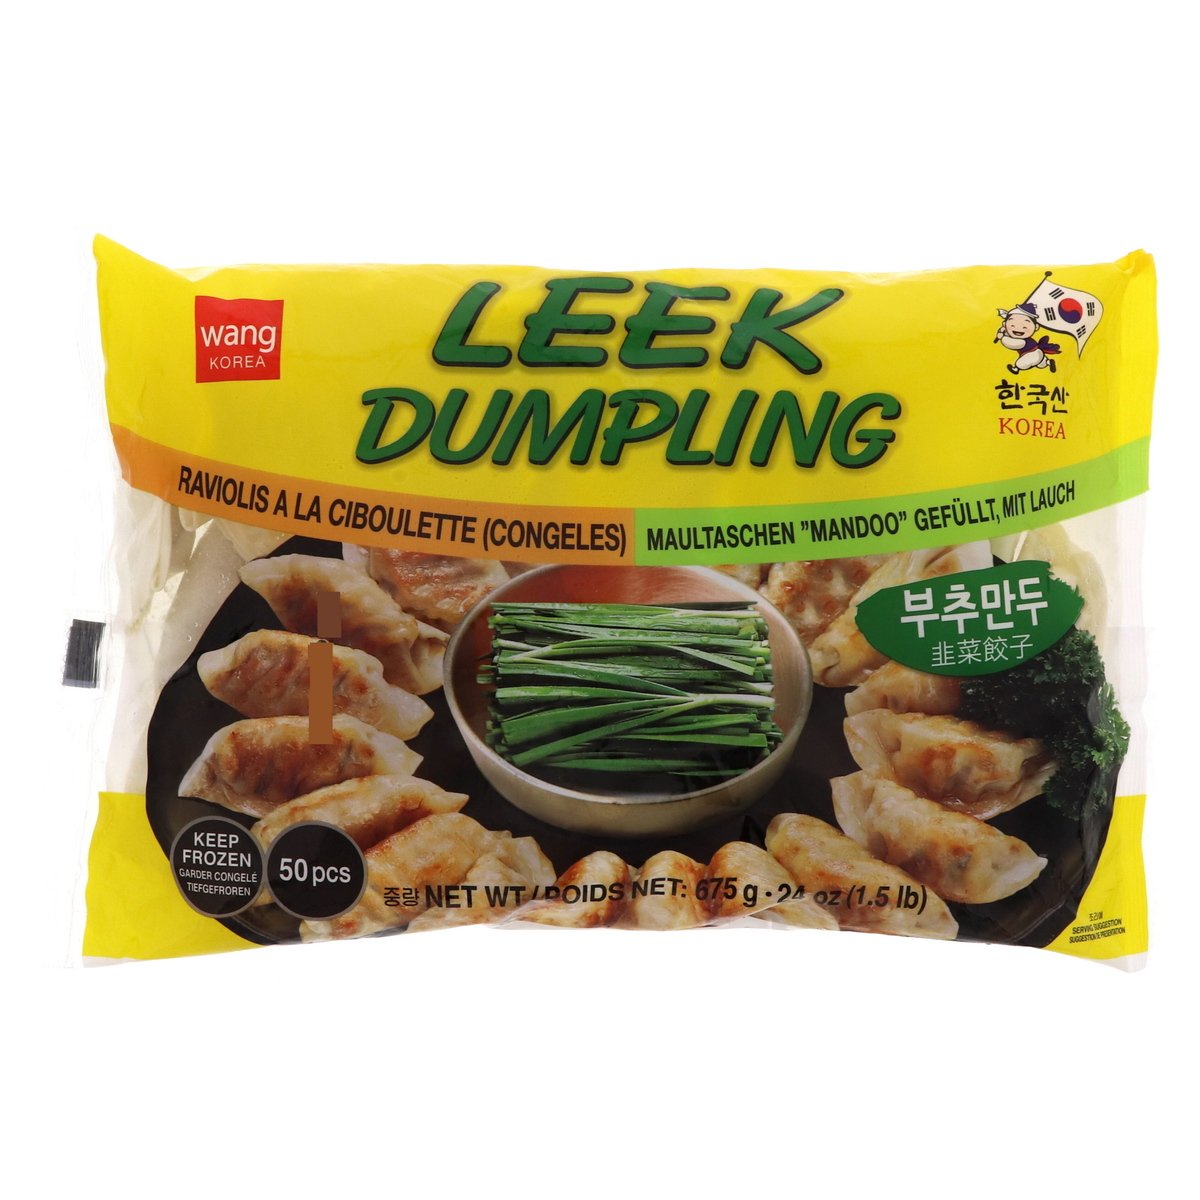 Wang Korea Leek Dumpling 675 g